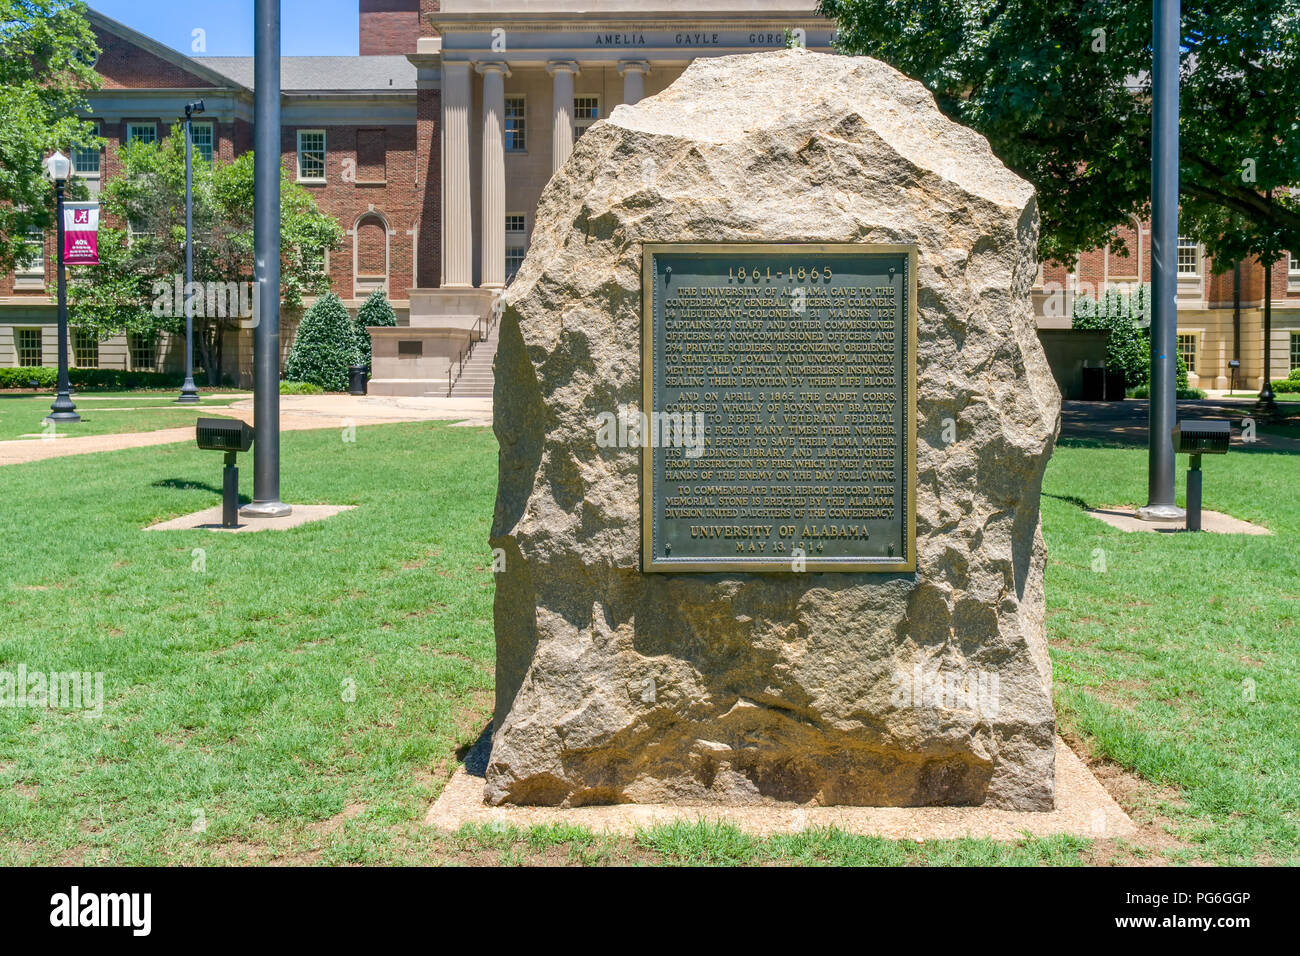 TUSCALOOSA, AL/USA - Juni 6, 2018: Konföderierte Kriegerdenkmal auf dem Campus der Universität von Alabama. Stockfoto